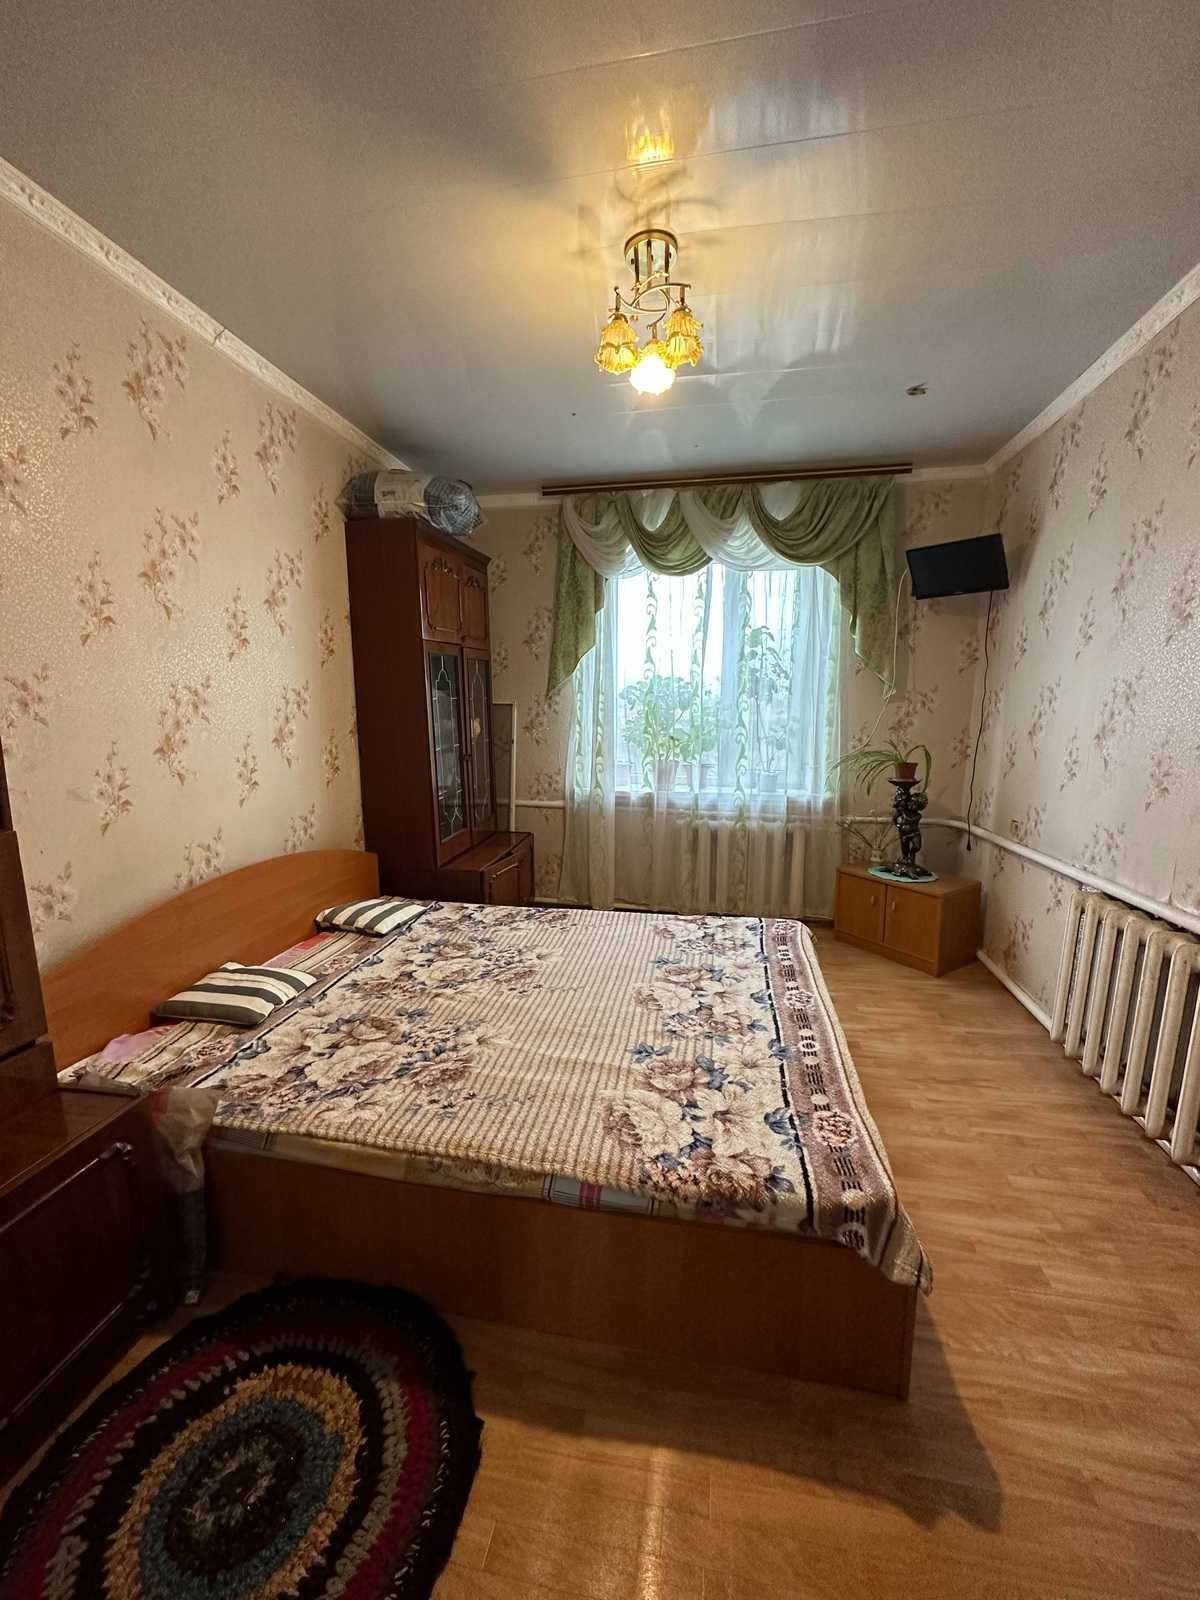 Продаж будинку за містом Бородянка.